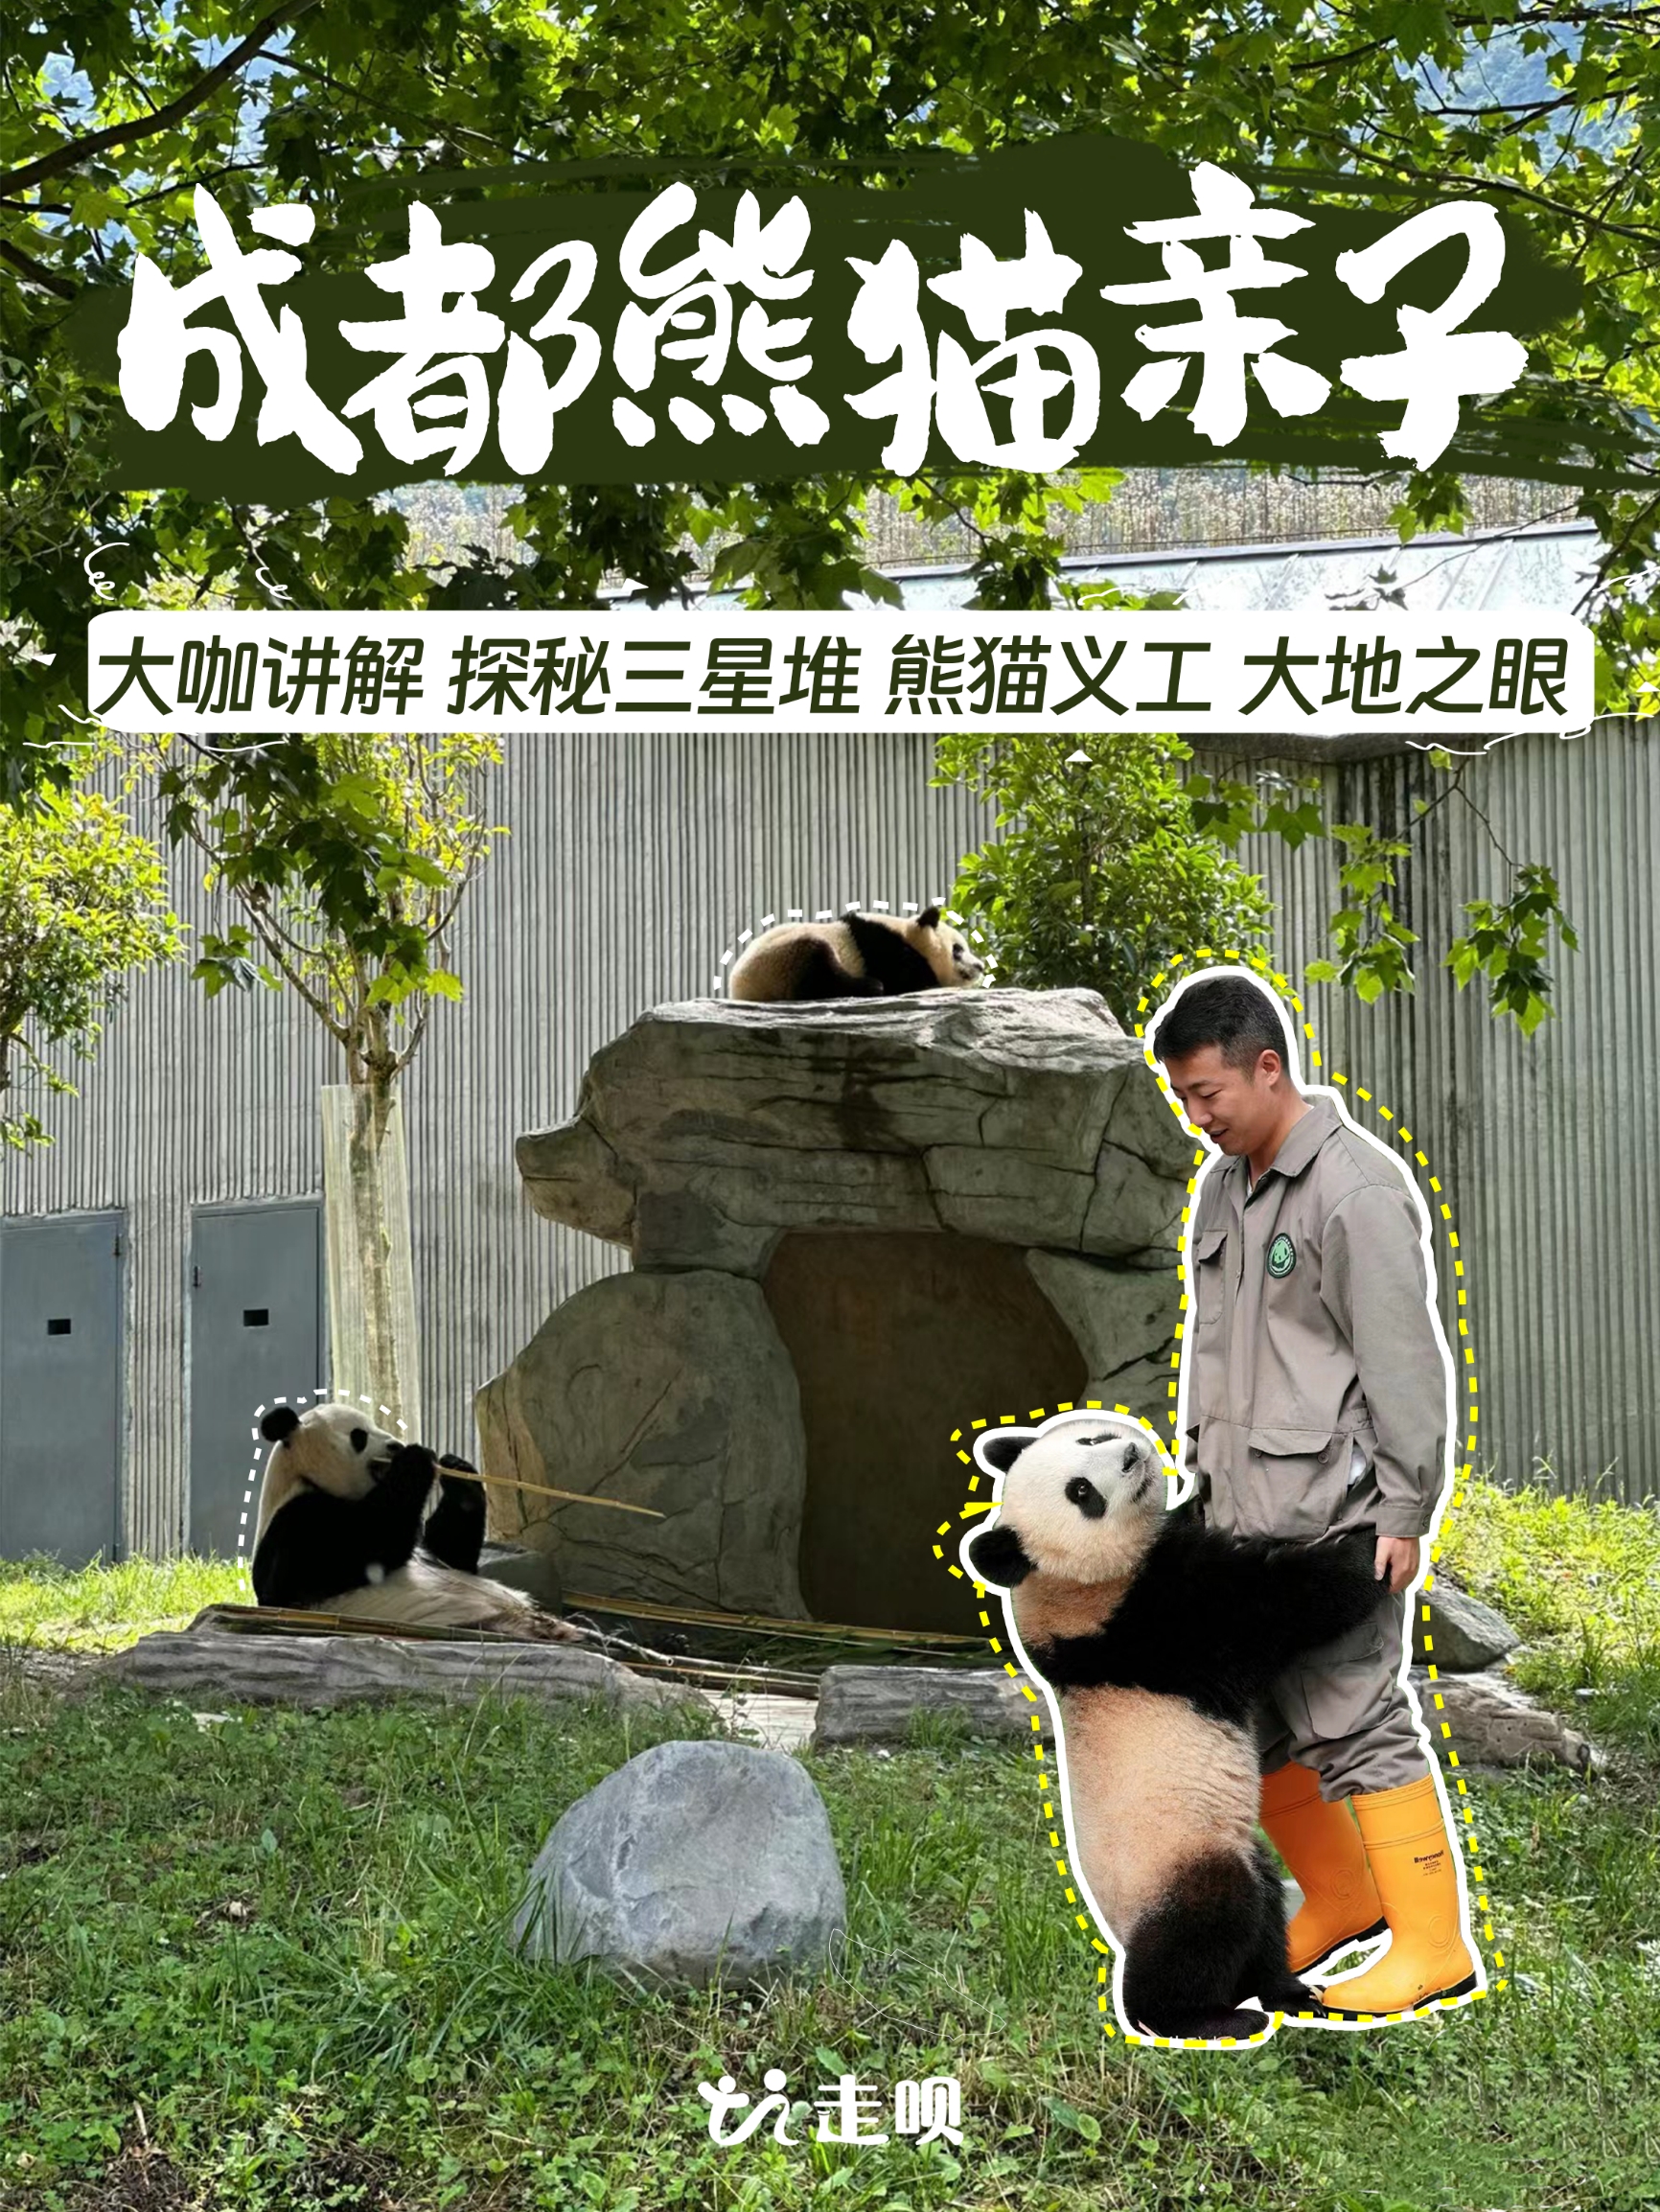 摇身一变熊猫“饲养员”萌娃超爱的四川之旅